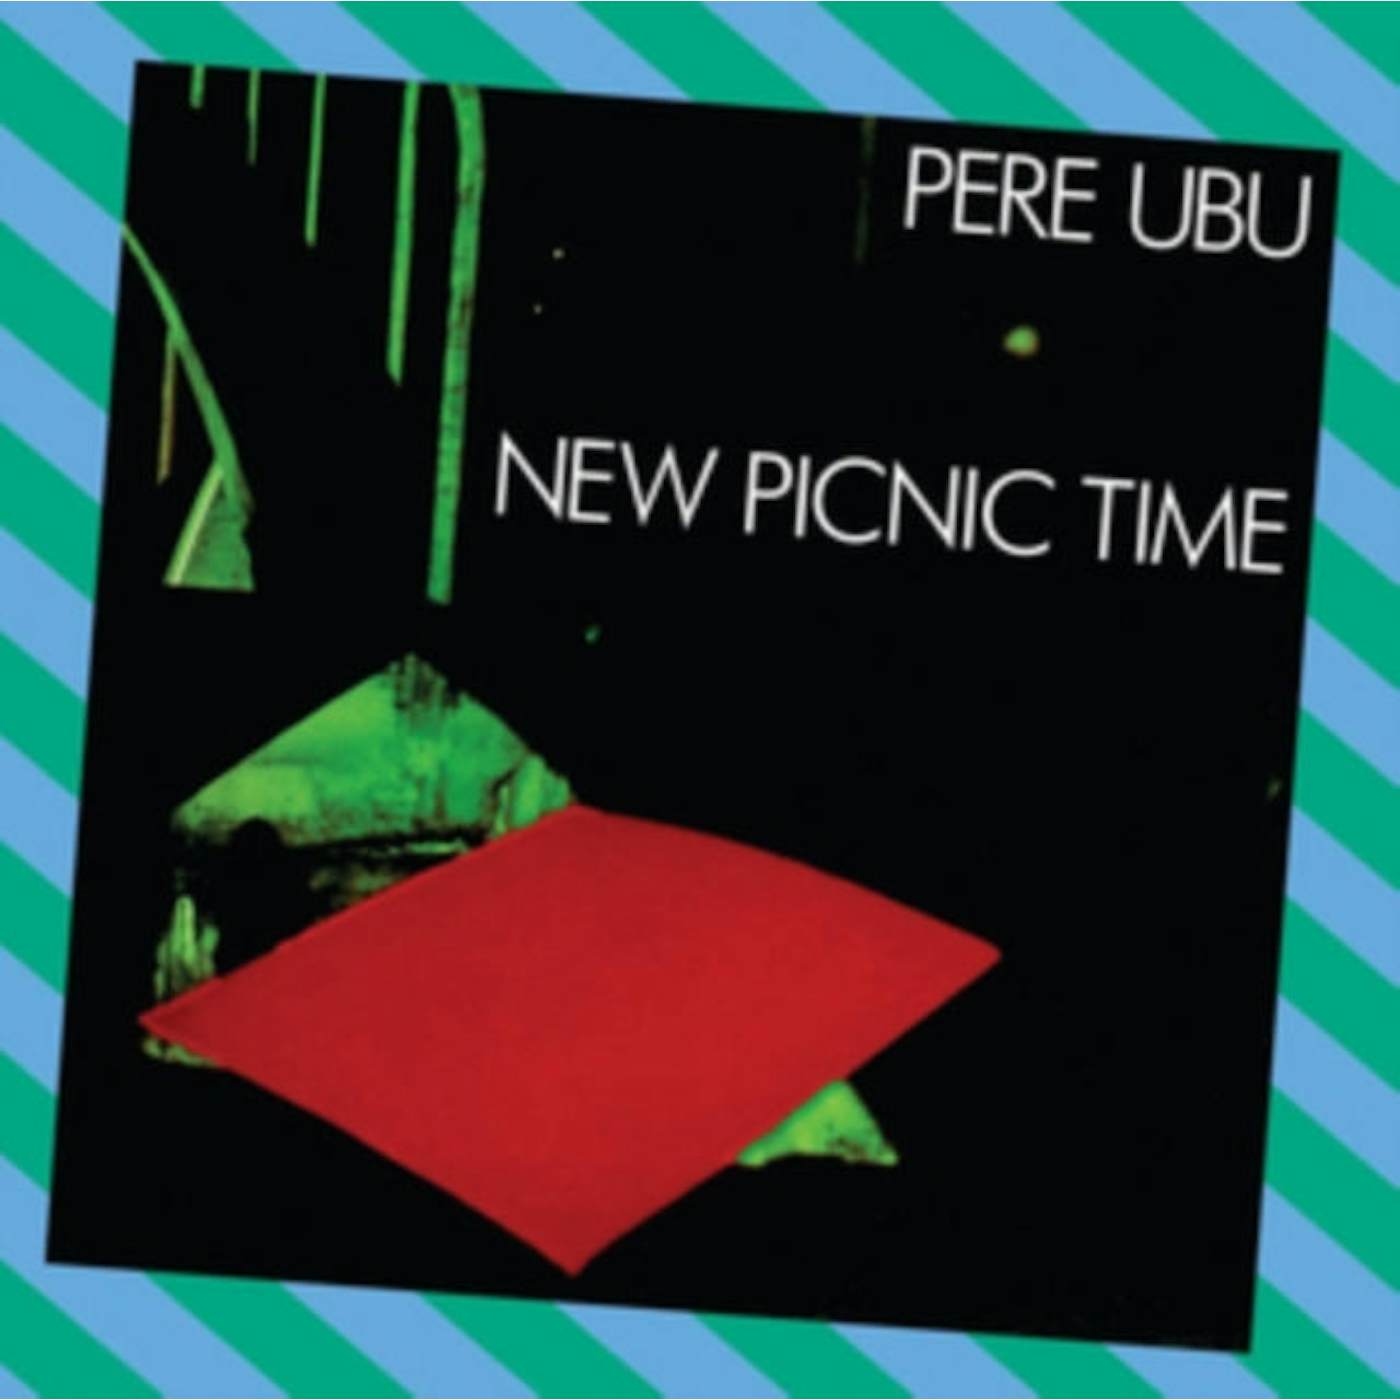 Pere Ubu LP Vinyl Record - New Picnic Time